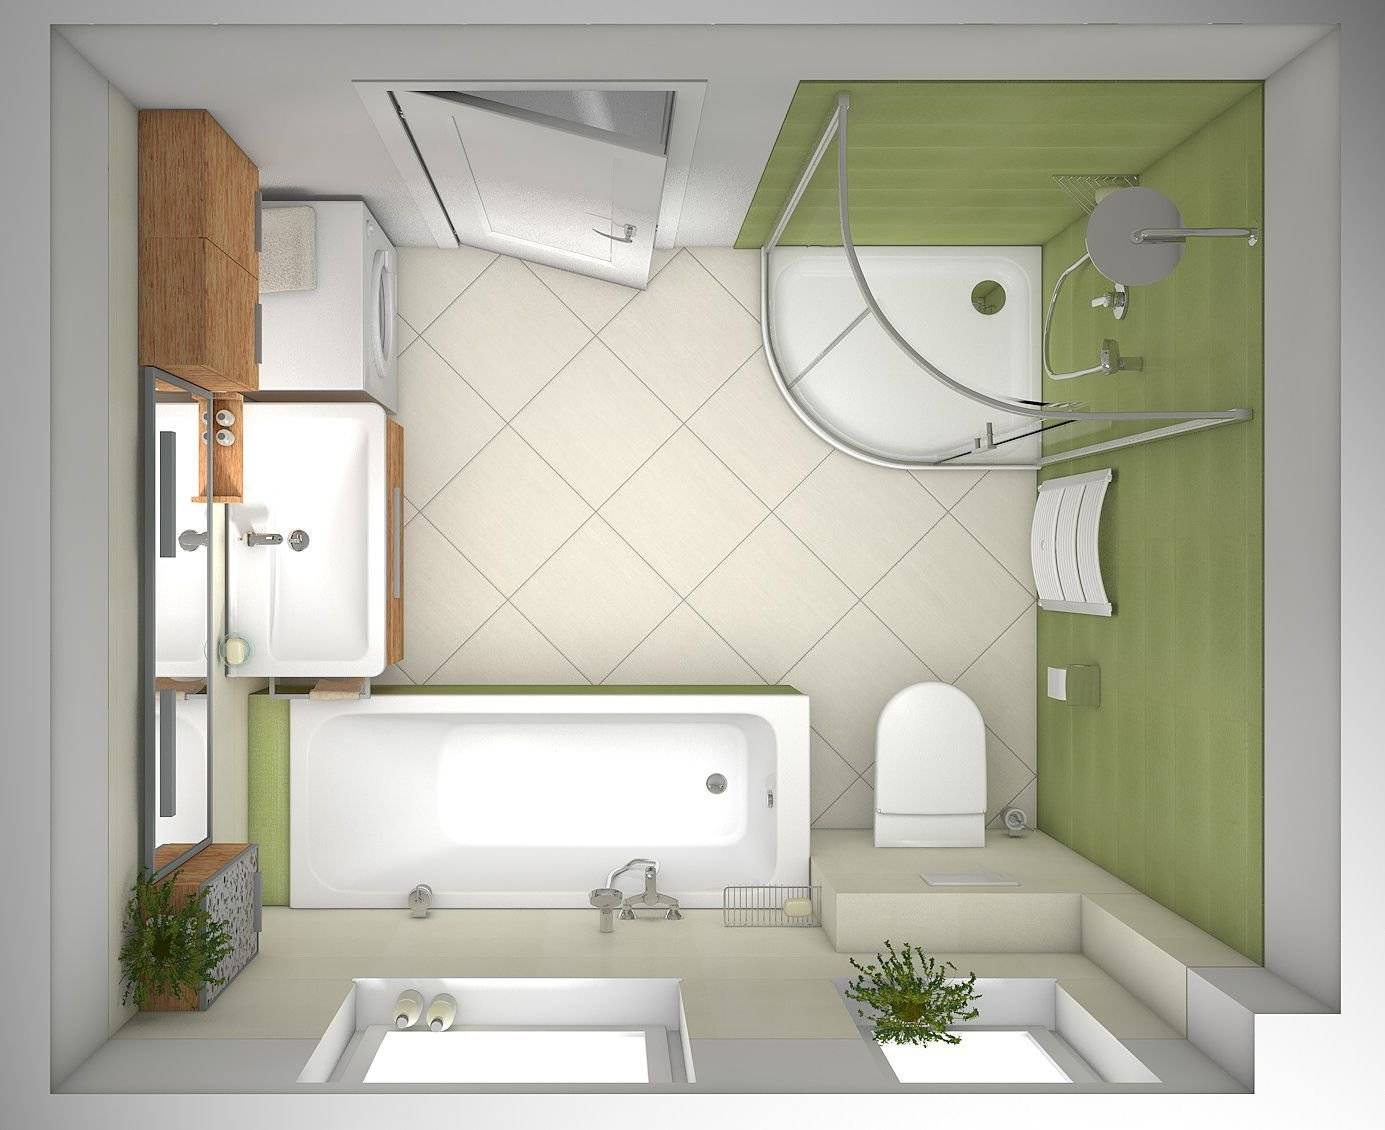 Уютный дизайн узкой ванной комнаты: от выбора сантехники до обустройства